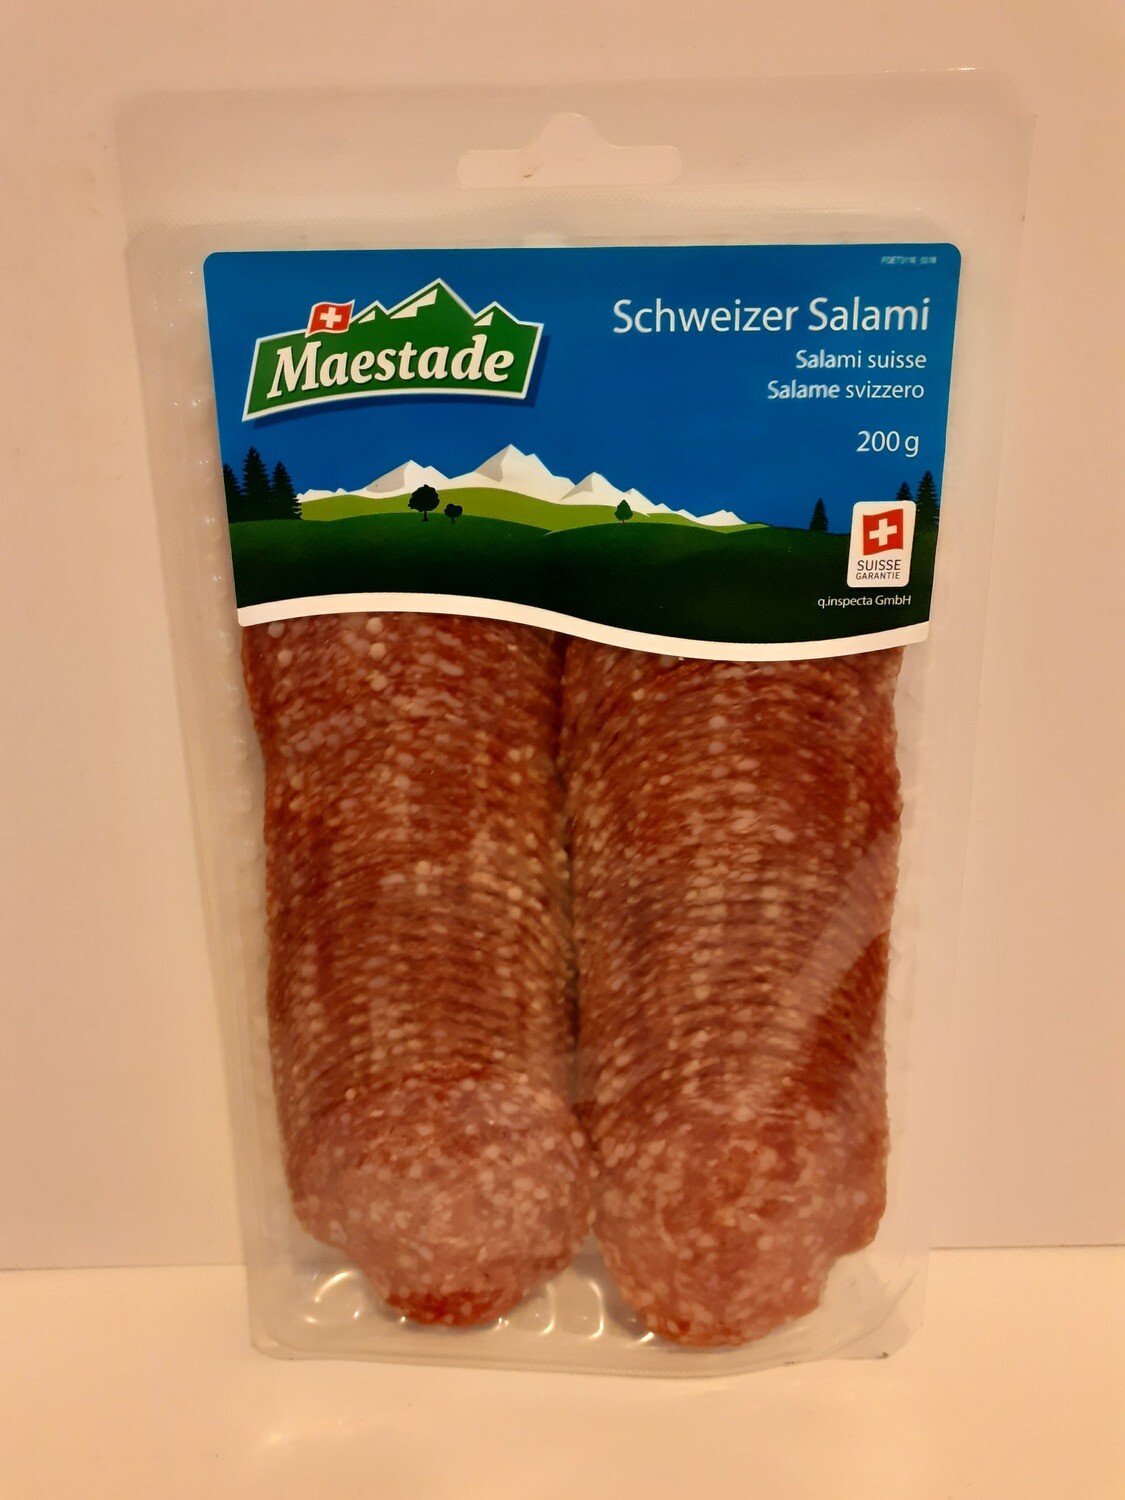 Schweizer Salami MAESTARDE 200g